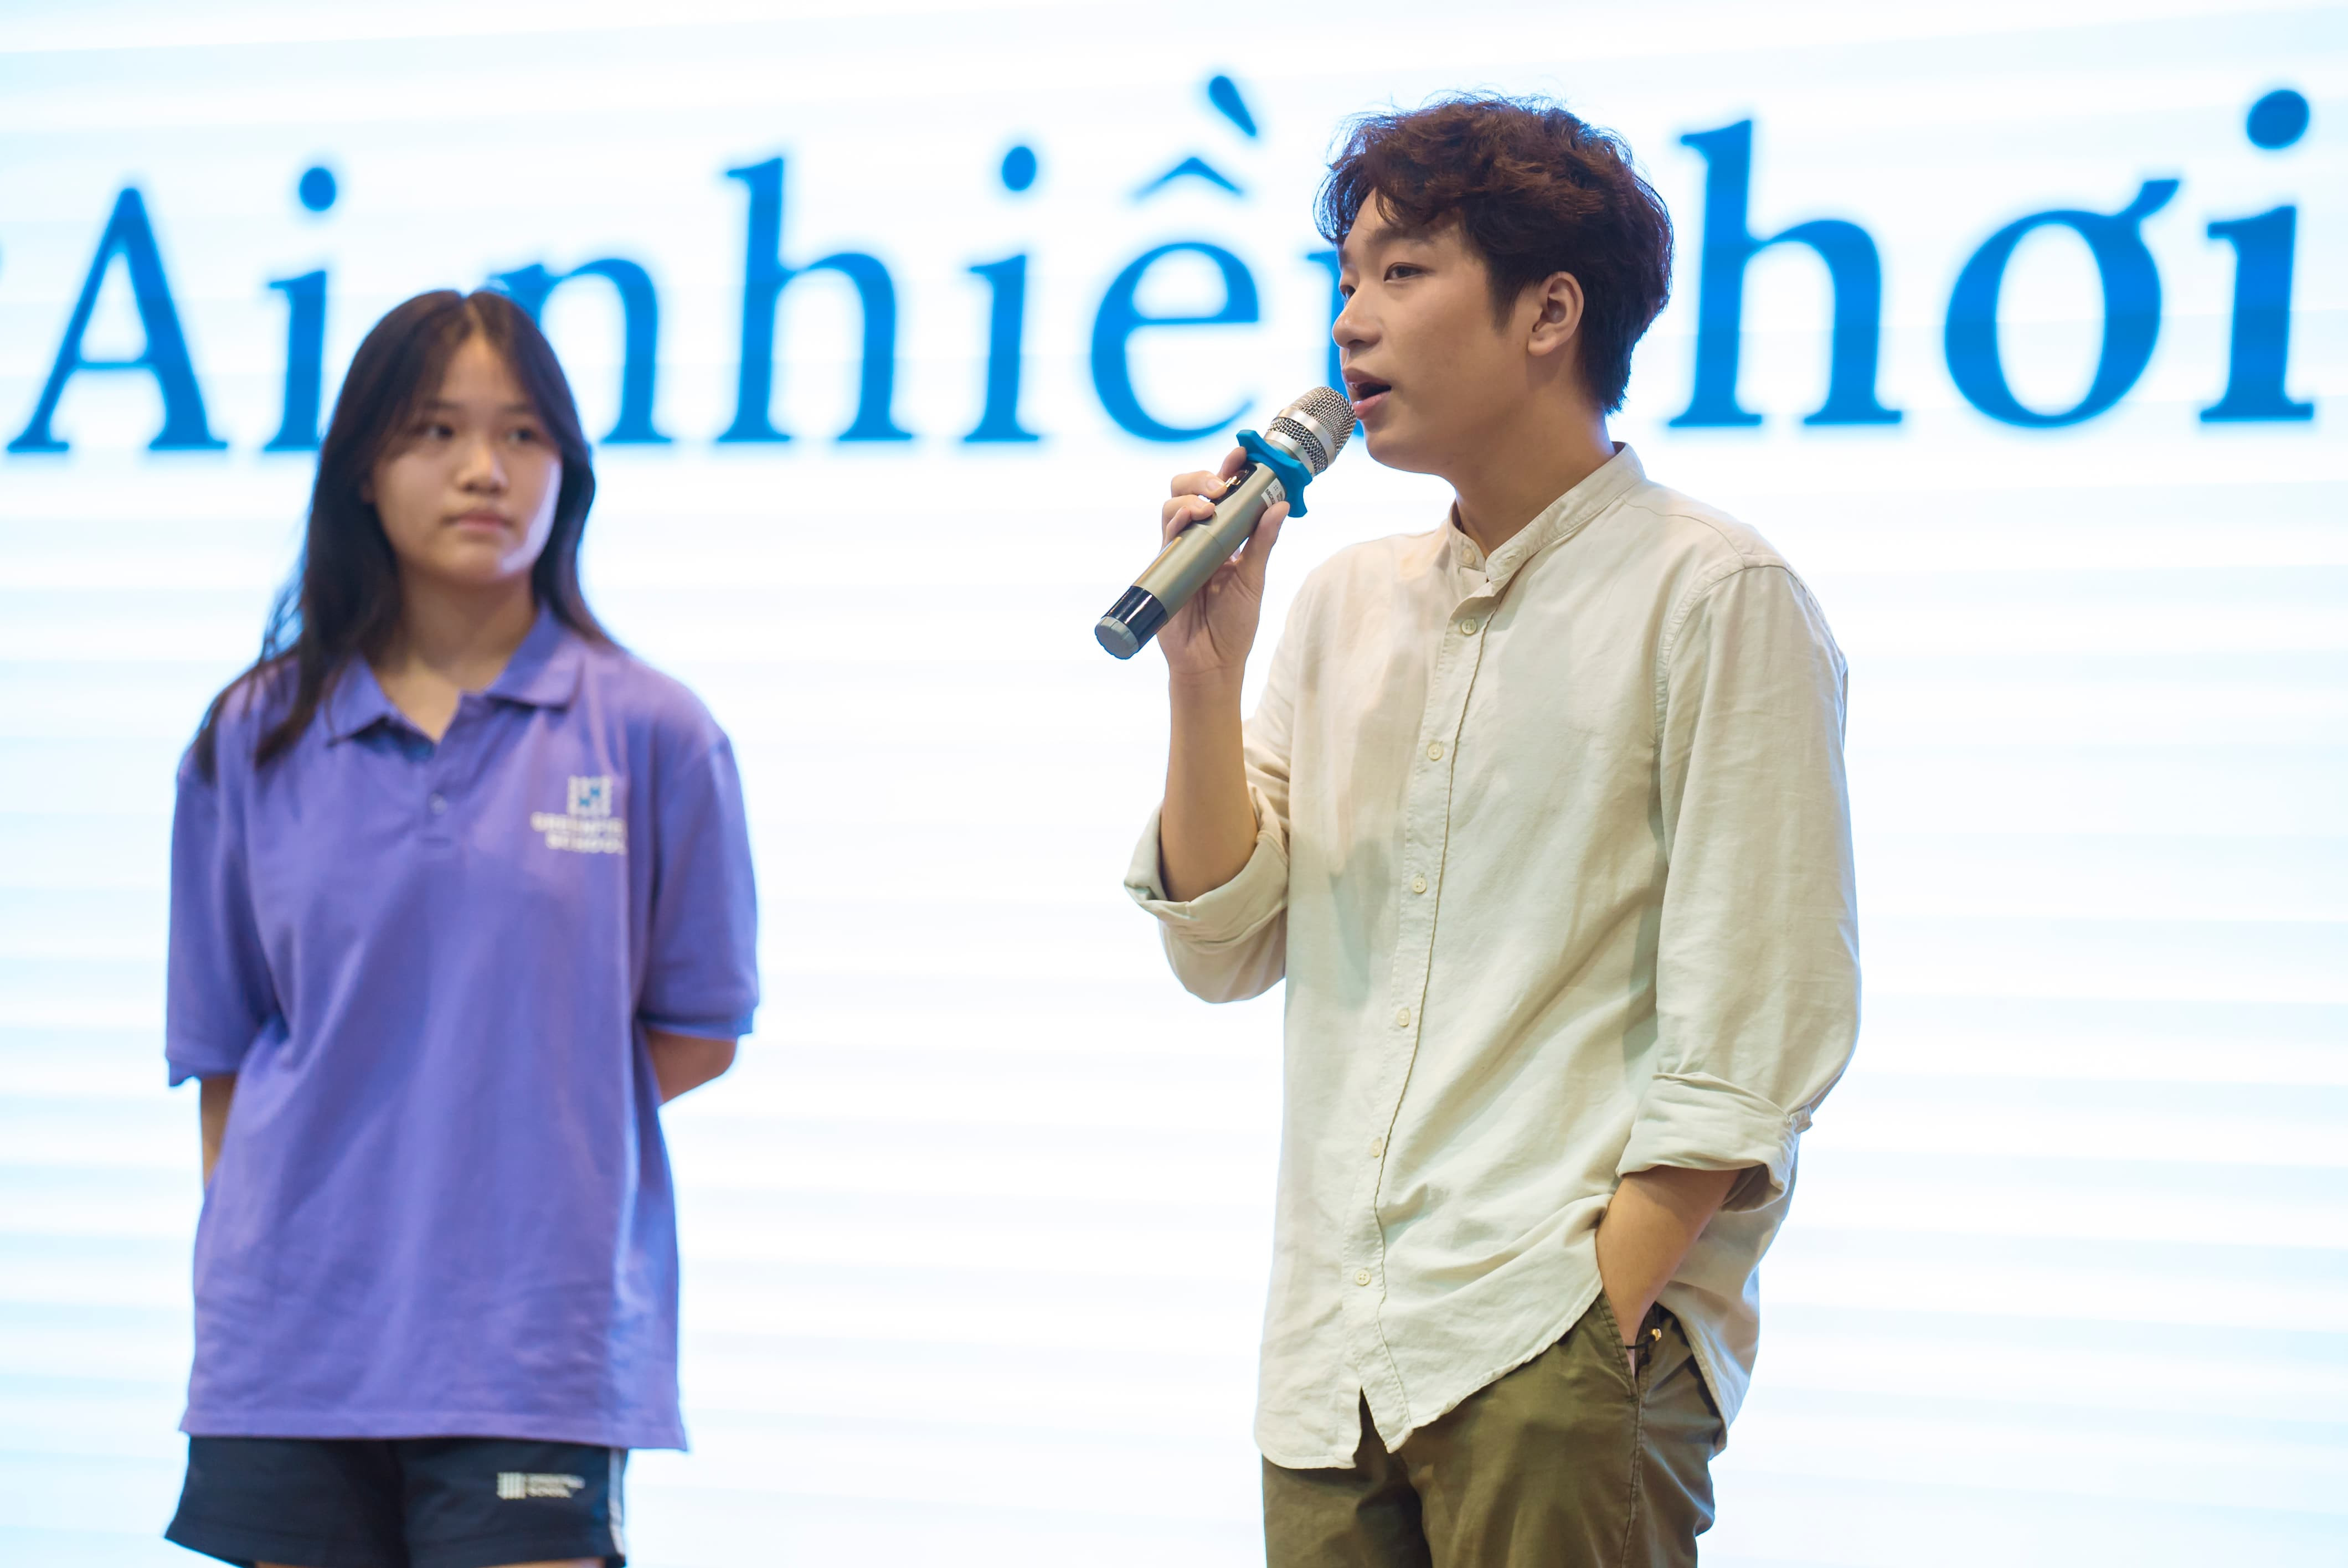 Workshop "Đánh thức kỹ năng hùng biện": Diễn giả Nguyễn Công Duy Anh bật mí cách tỏa sáng trên sân khấu
